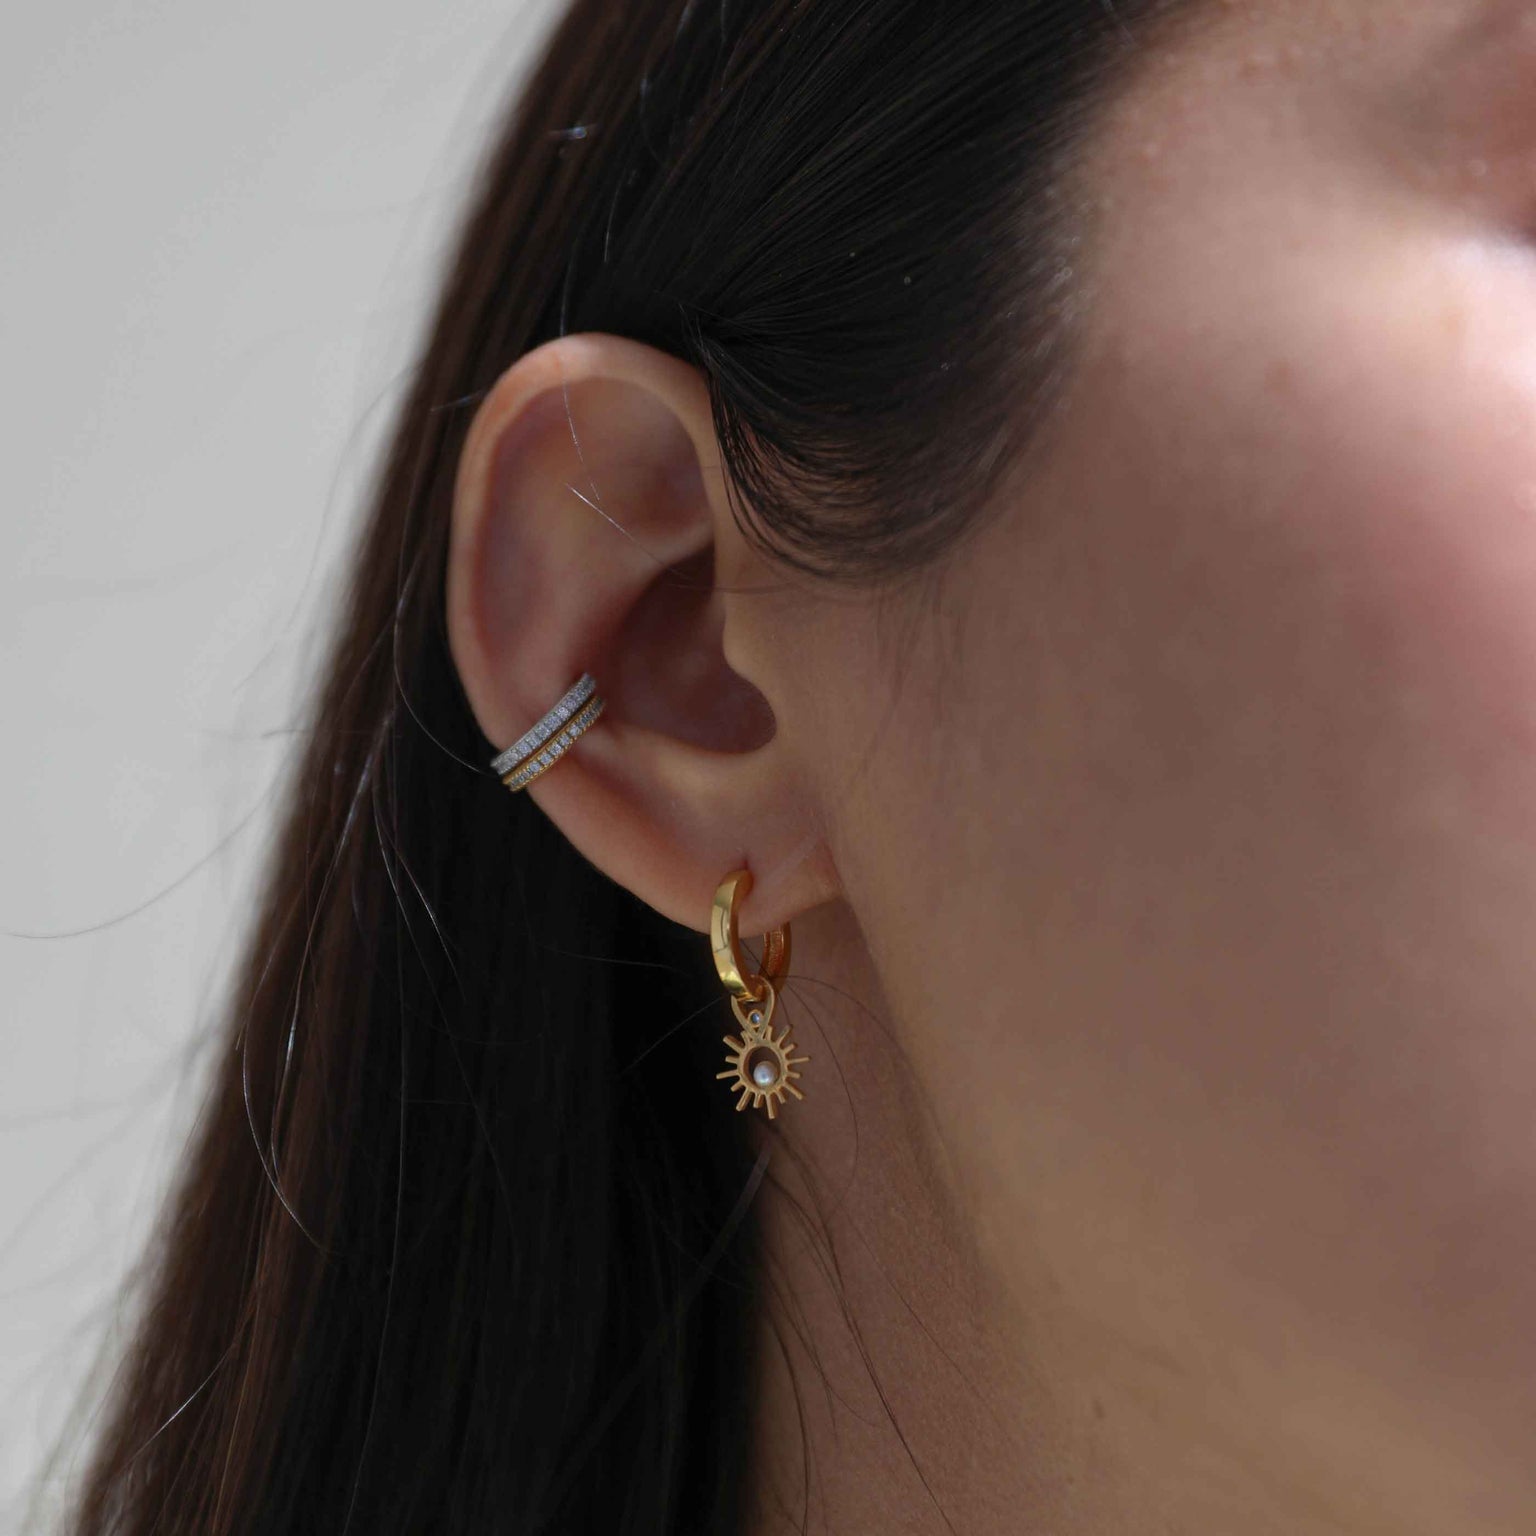 Crystal Ear Cuff in Silver worn with gold crystal ear cyff